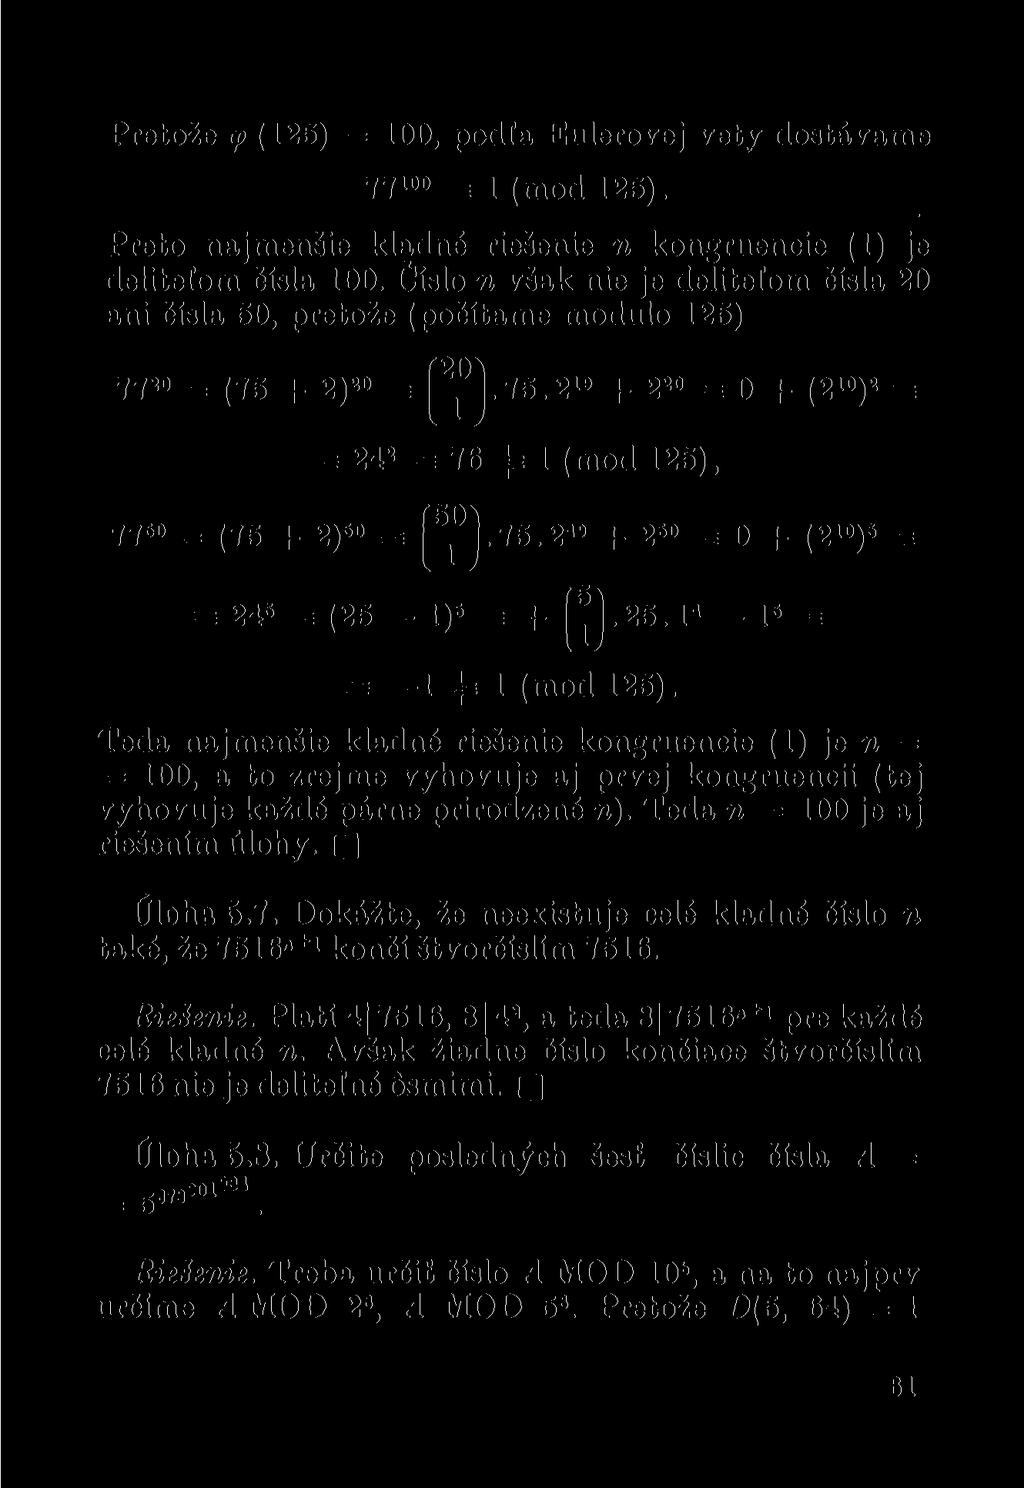 Pretože <p (125) = 100, podia Eulerovej vety dostáváme 77 100 = 1 (mod 125). Preto najmenšie kladné riešenie n kongruencie (1) je delitelom čísla 100.